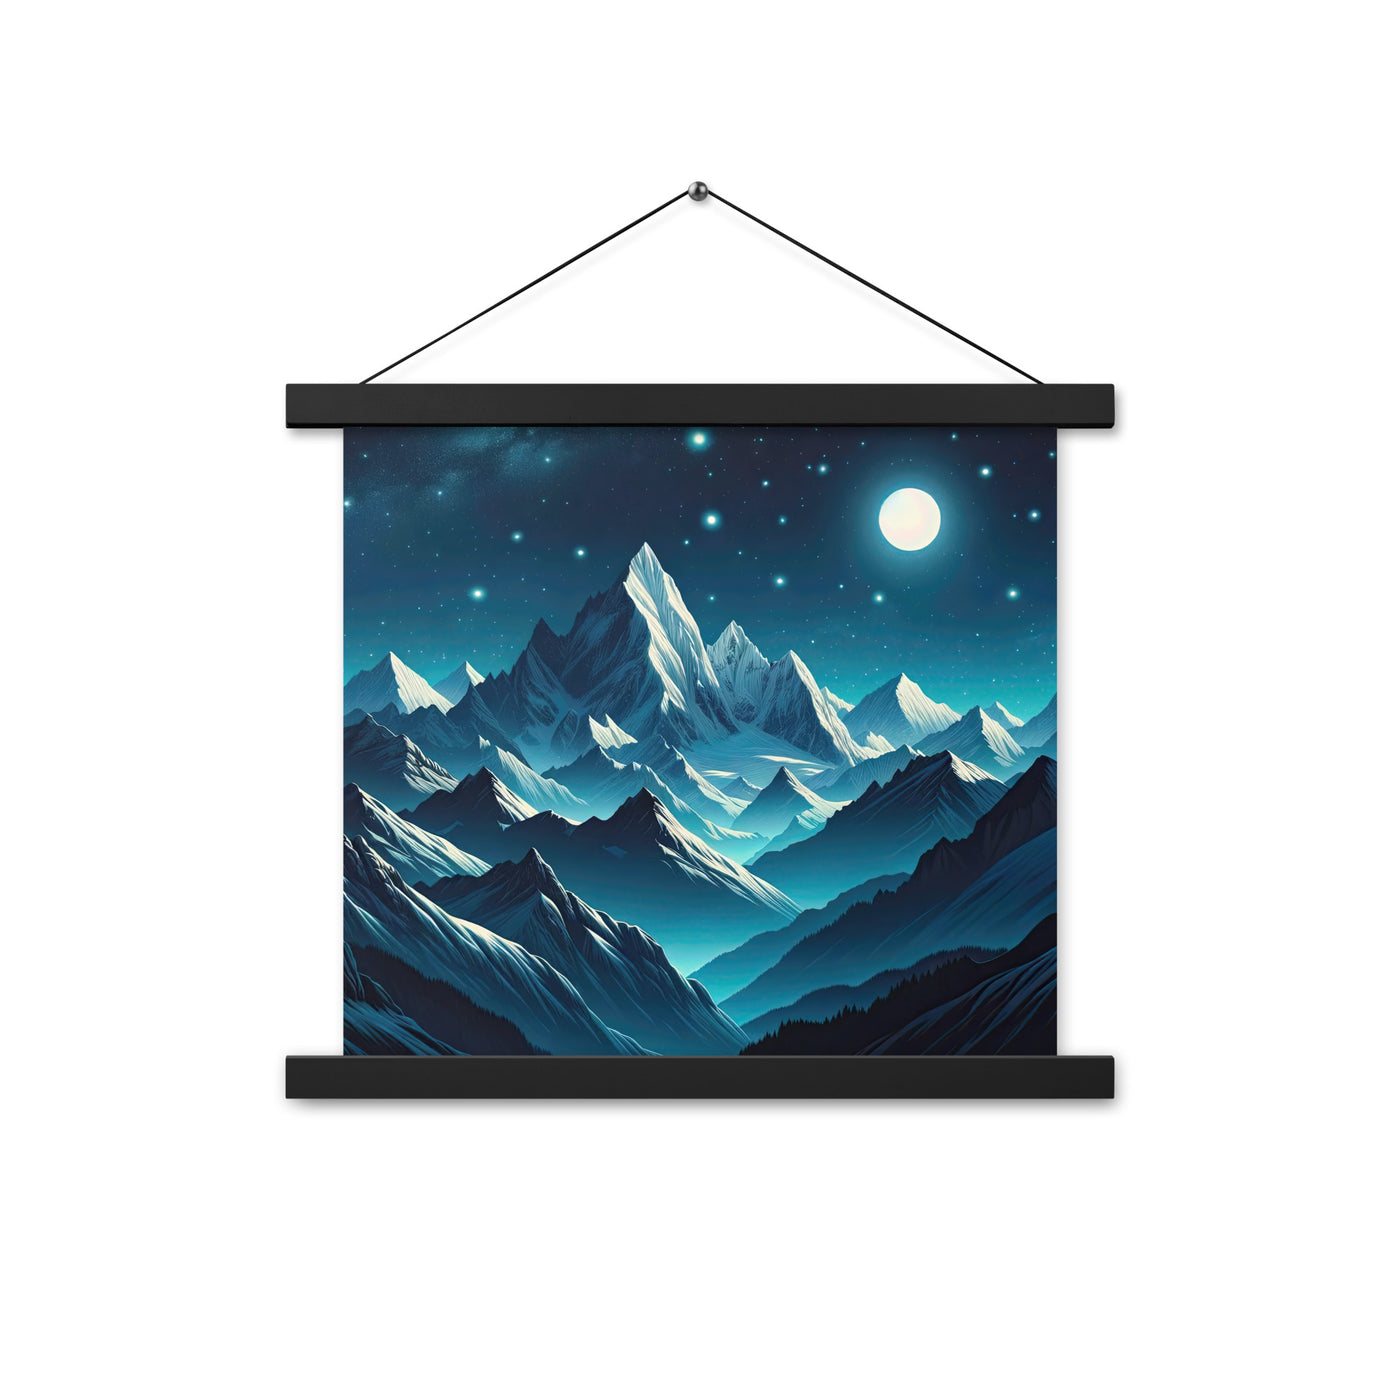 Sternenklare Nacht über den Alpen, Vollmondschein auf Schneegipfeln - Premium Poster mit Aufhängung berge xxx yyy zzz 35.6 x 35.6 cm